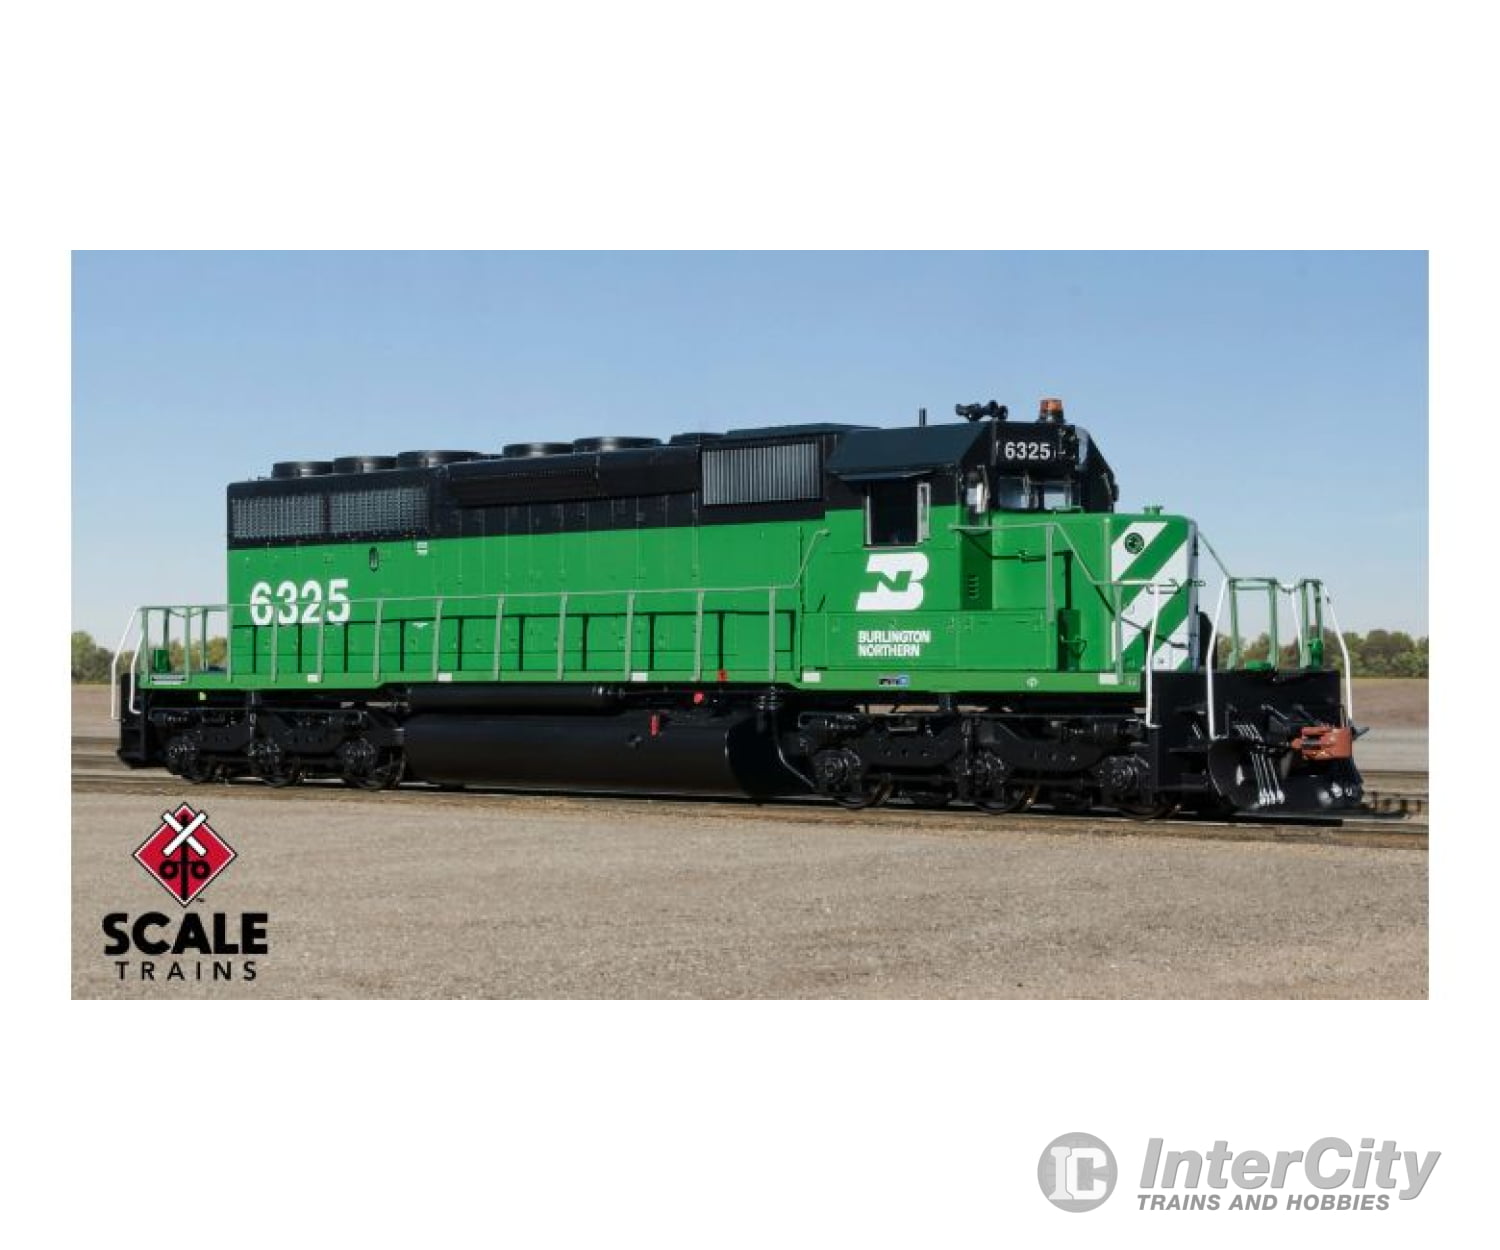 Scale Trains Sxt38781 Rivet Counter Ho Emd Sd40-2 Burlington Northern #6333 As-Delivered Locomotives